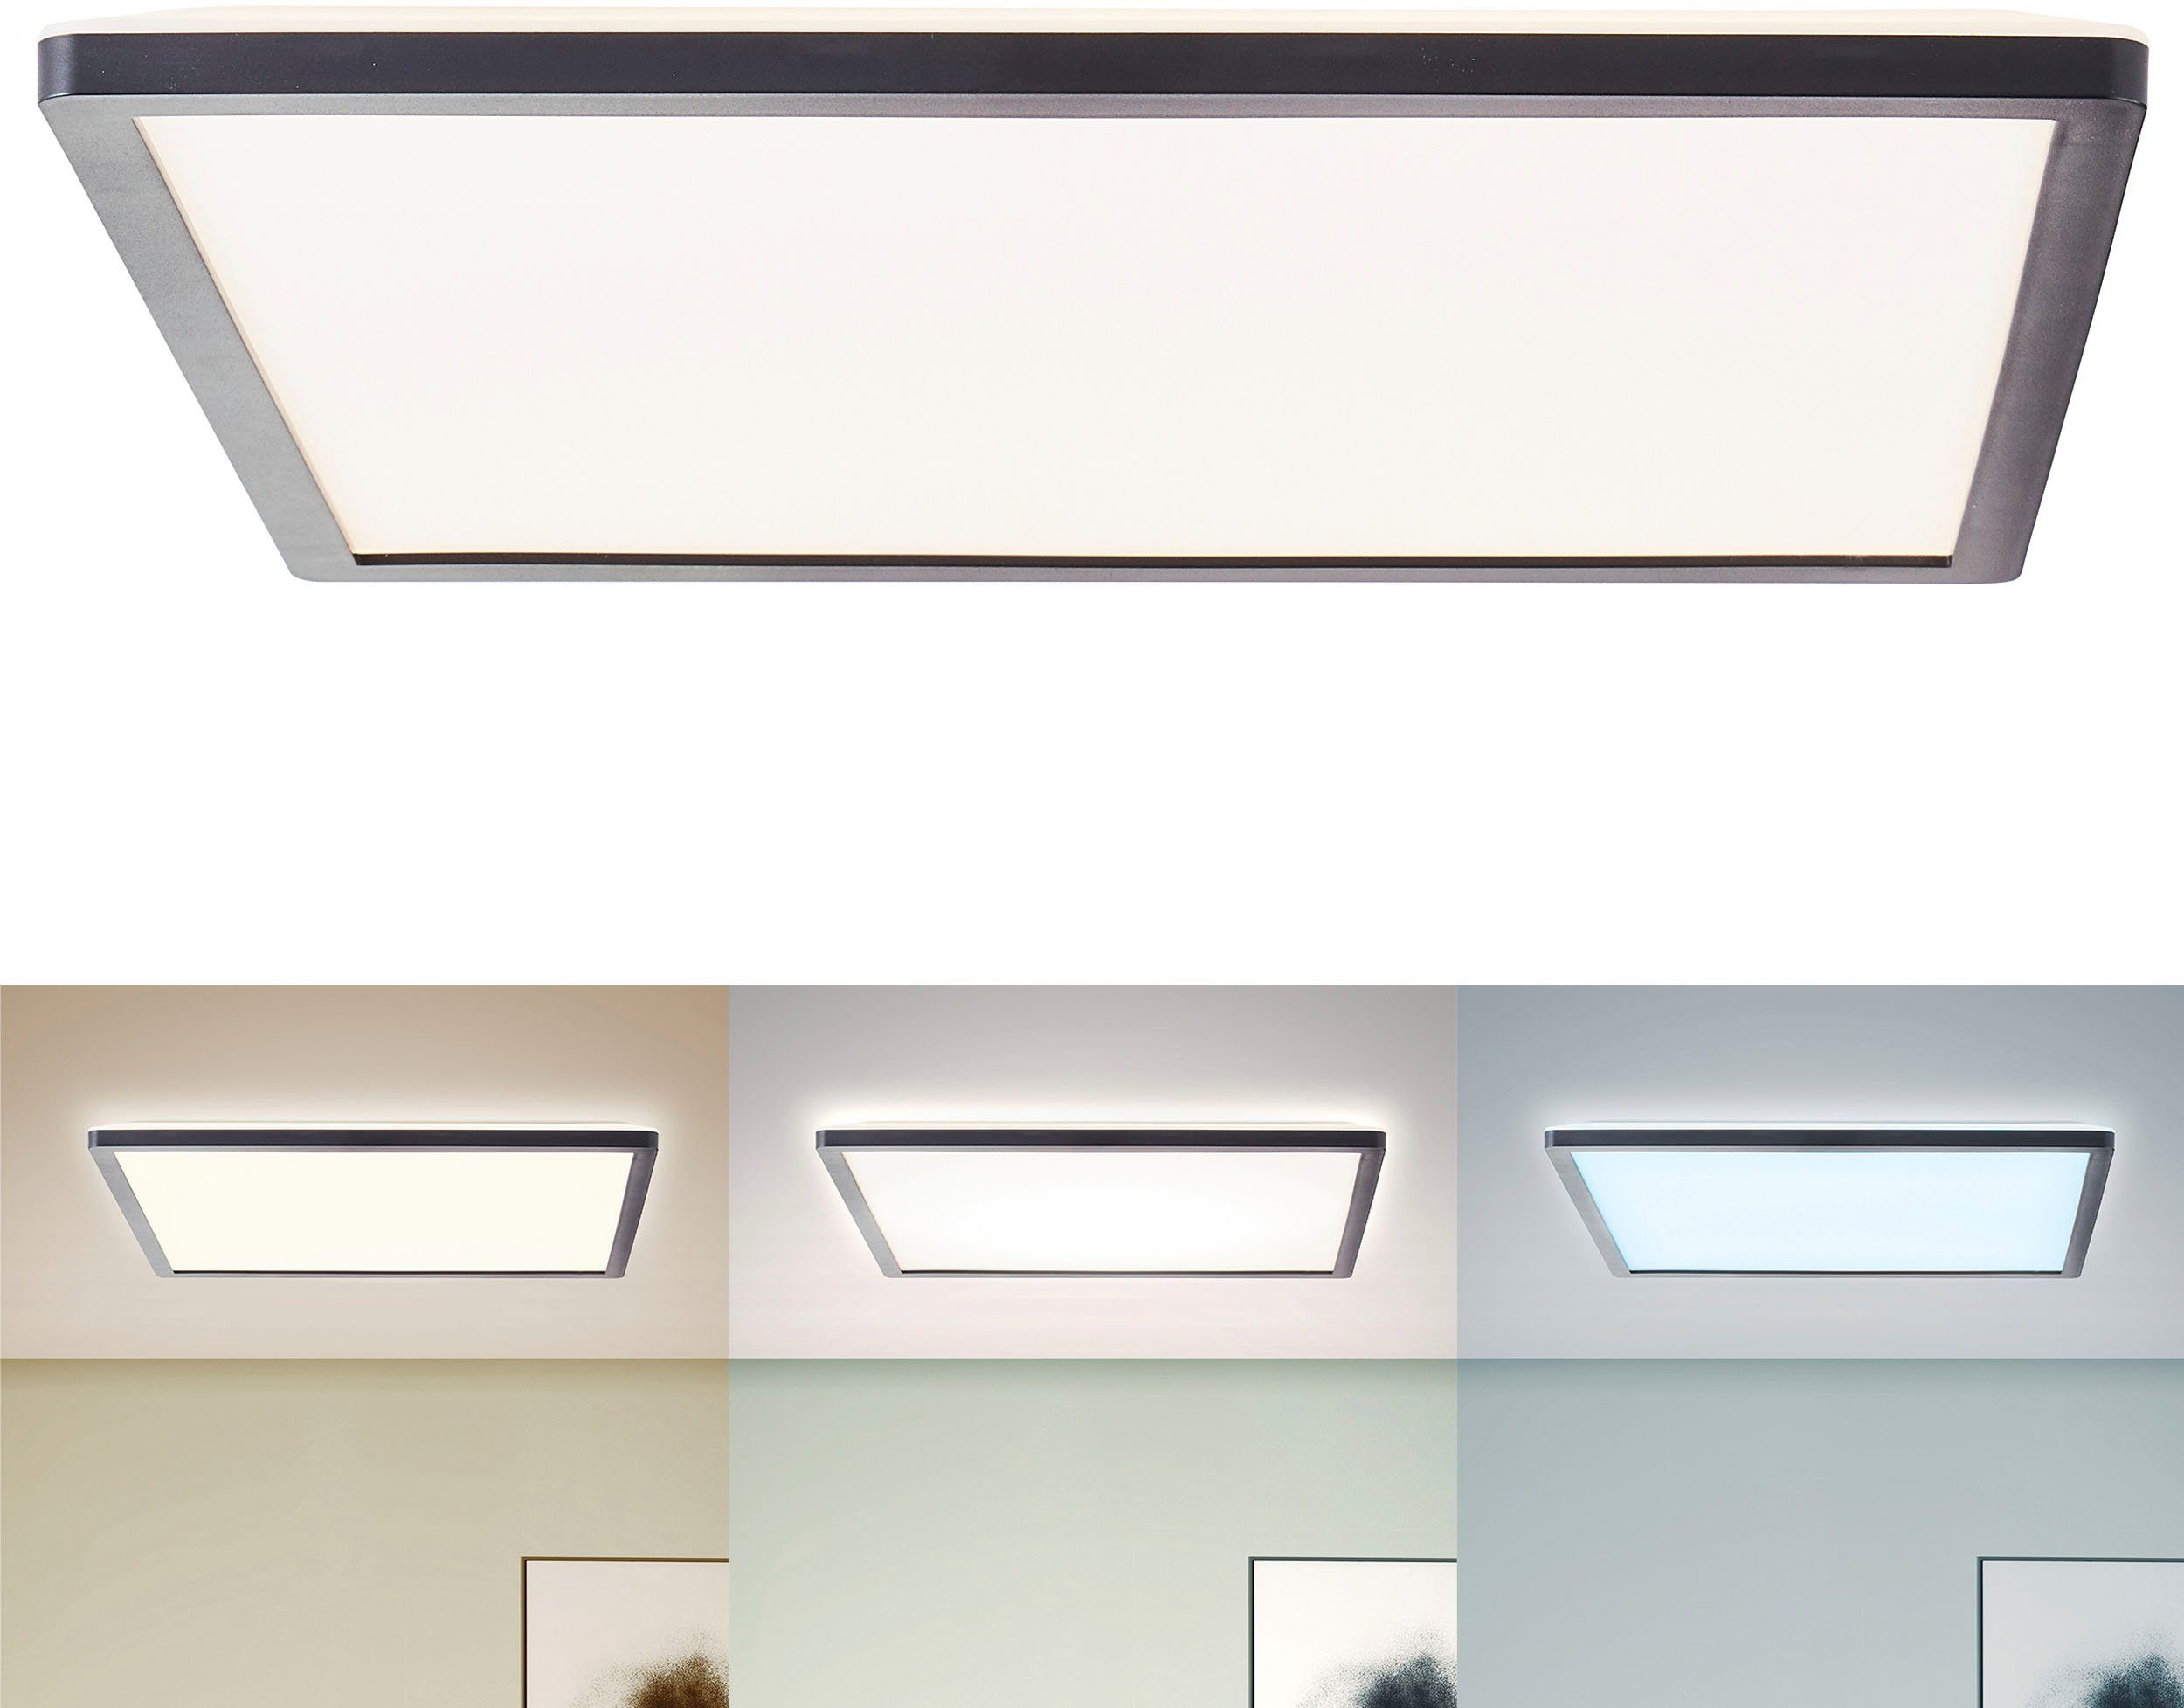 my home LED Deckenleuchte Enno, CCT - über Fernbedienung, LED fest integriert, warmweiß - kaltweiß, dimmbar, CCT Farbtemperatursteuerung, 2300 Lumen, inkl. Fernbedienung schwarz